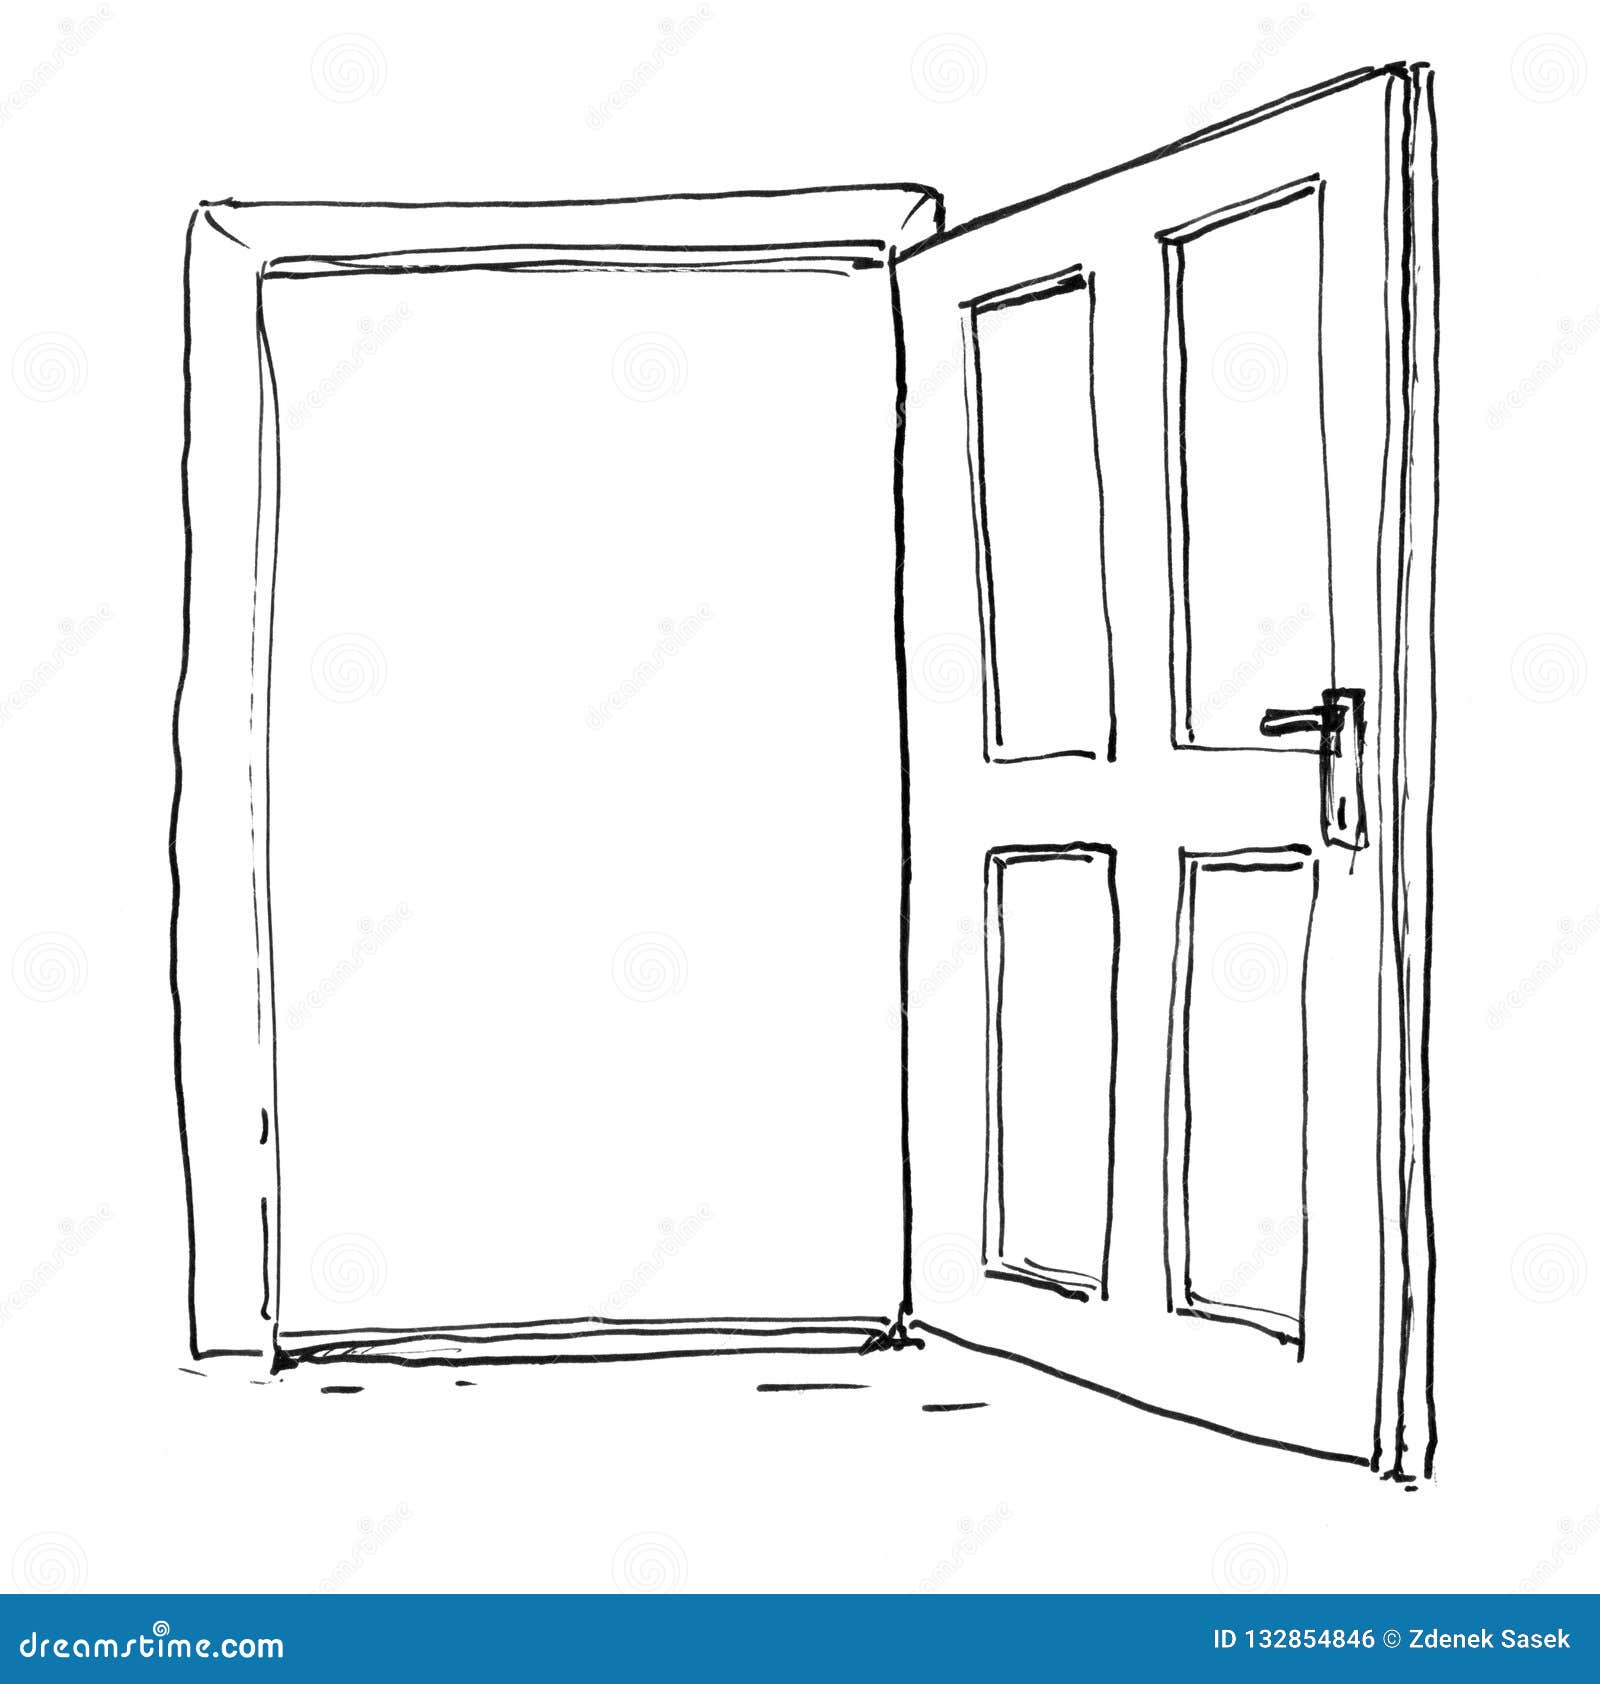 Door Sketch Open Images – Browse 33,342 Stock Photos, Vectors, and Video